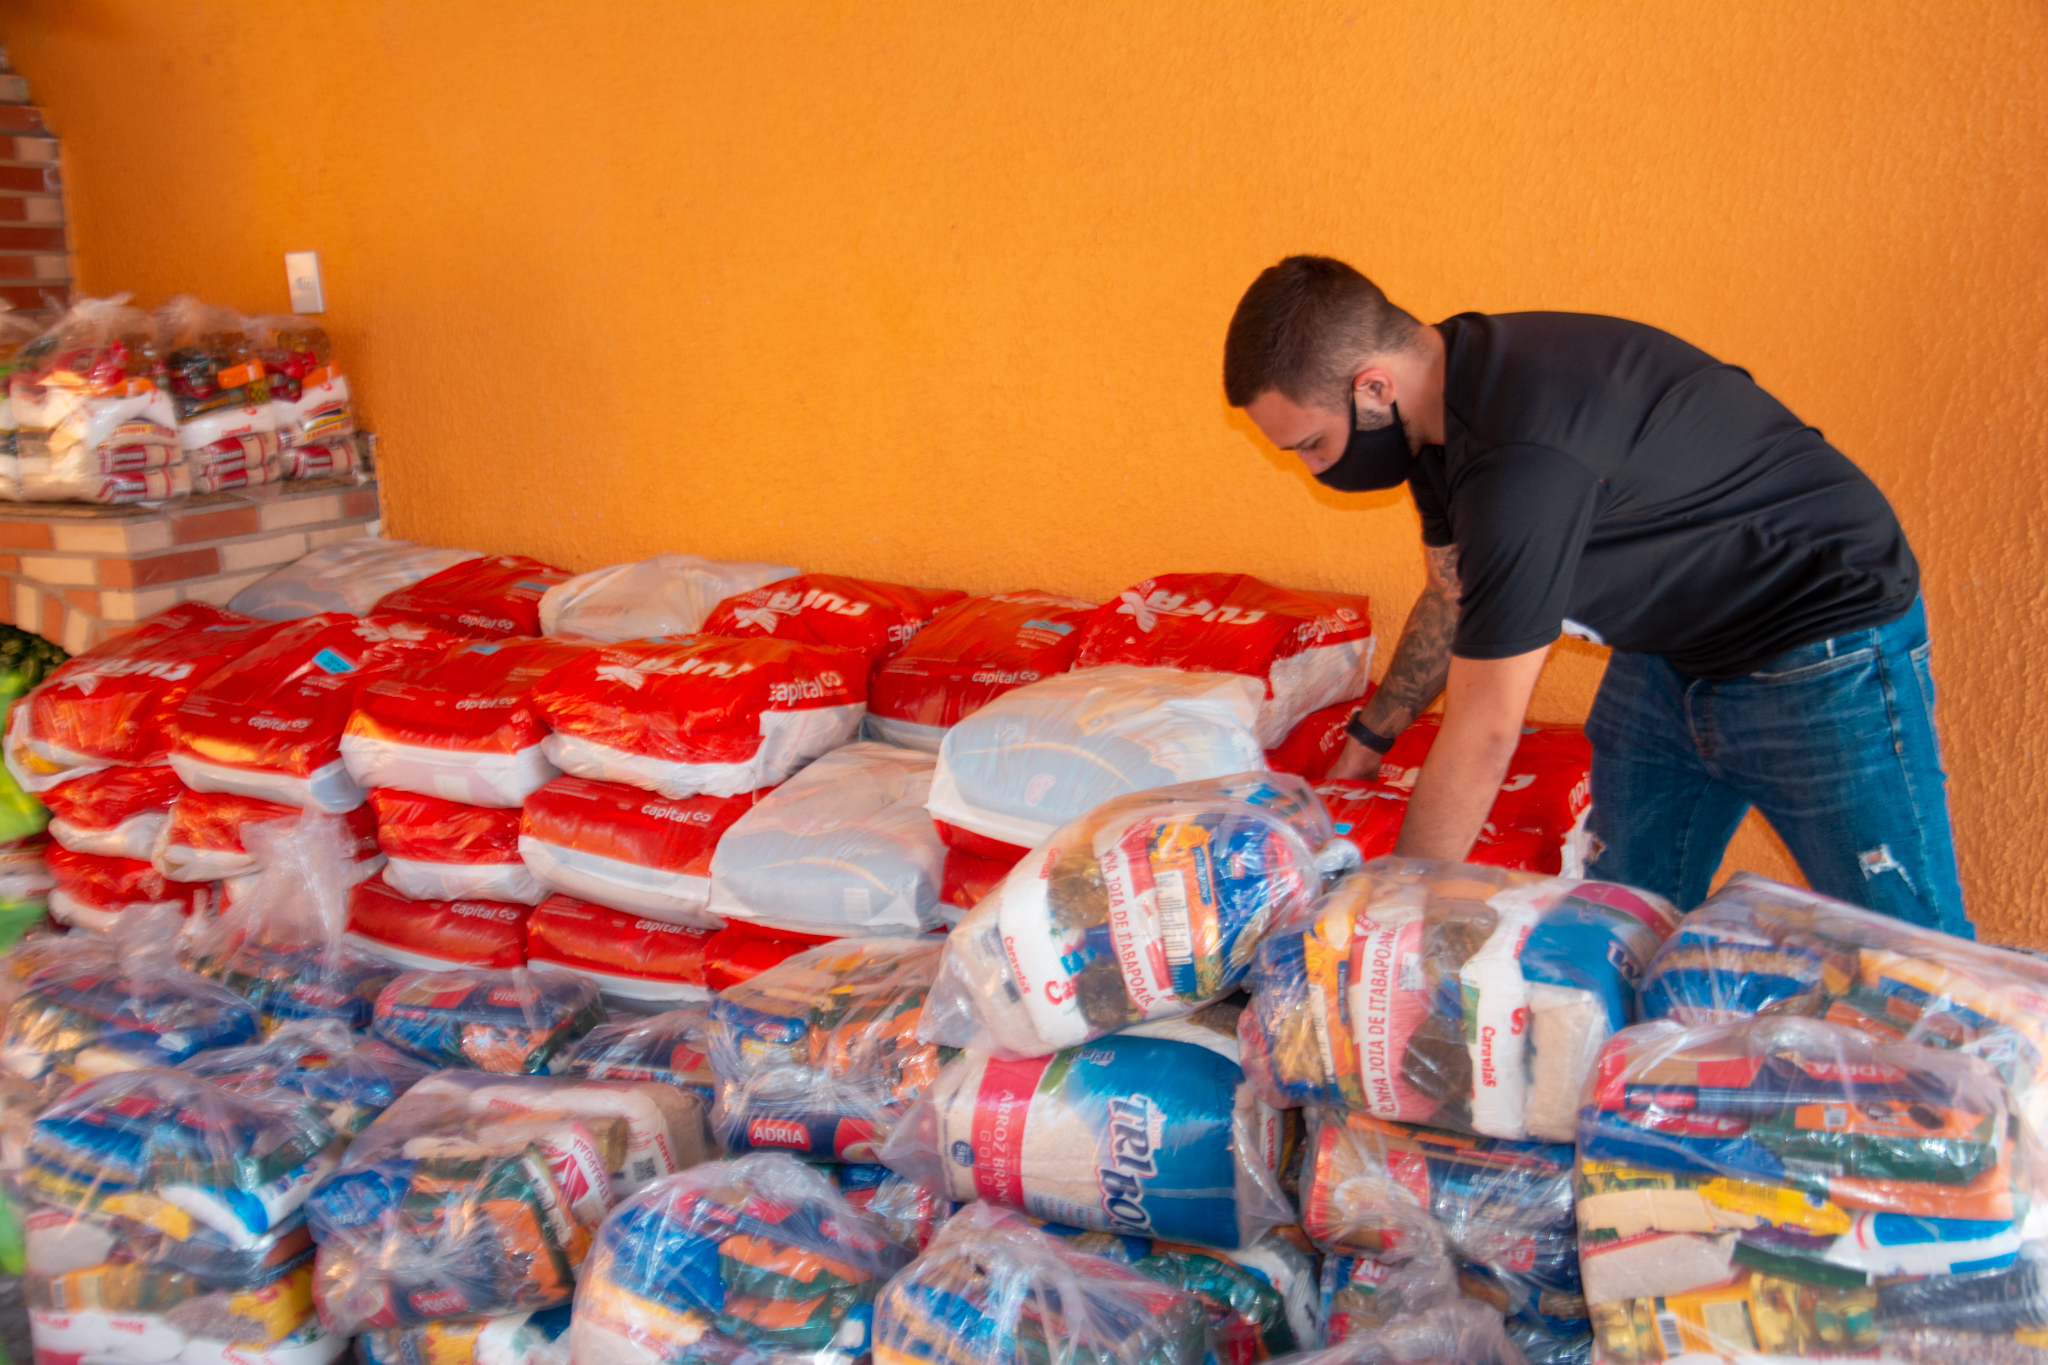 Instituto Juntos pelo Bem faz doação de 250 cestas básicas para moradores de comunidades do Complexo do Lins